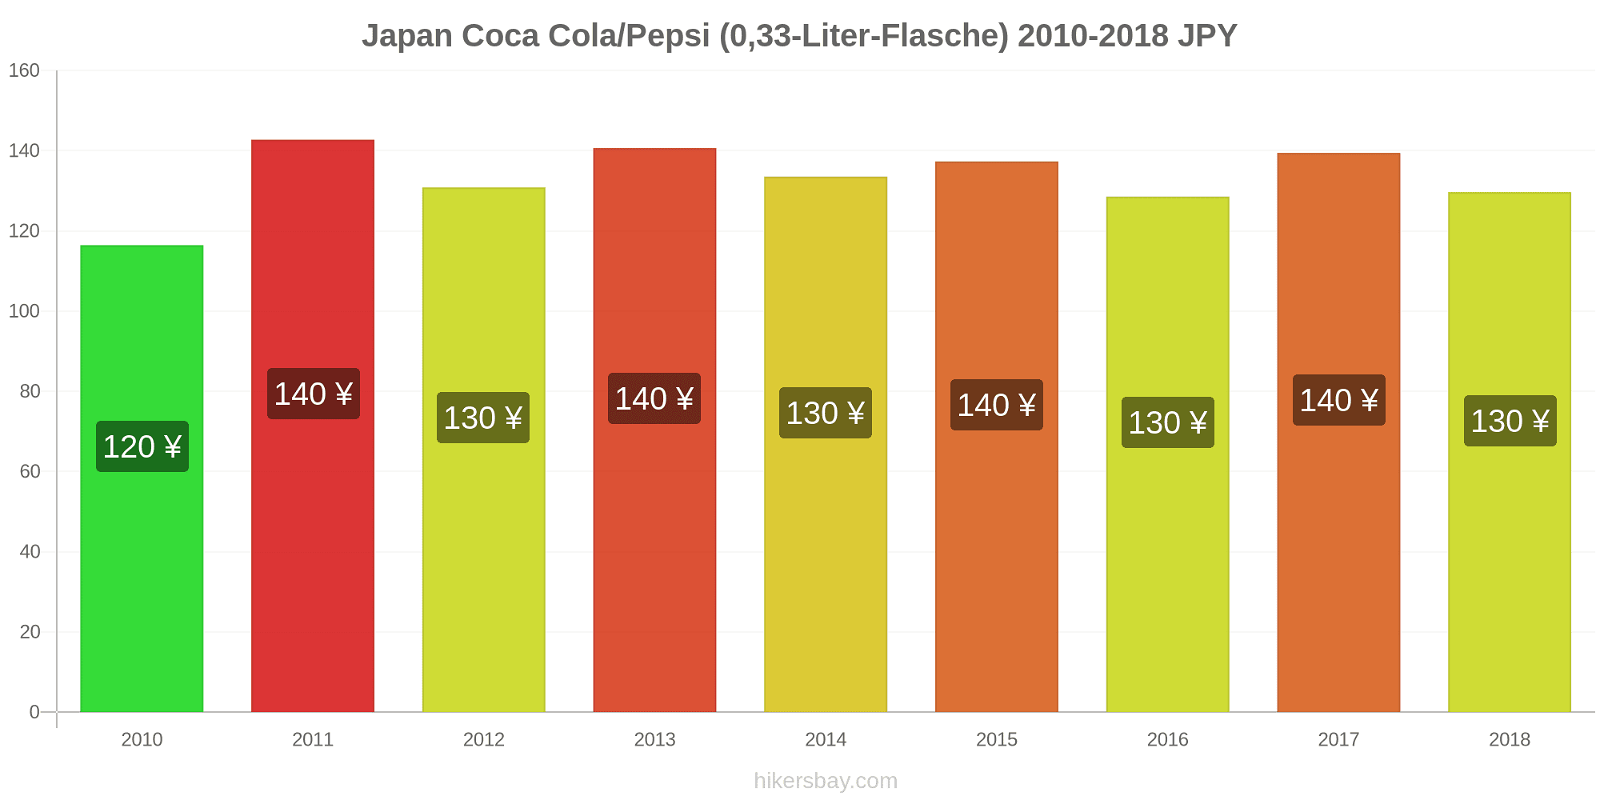 Japan Preisänderungen Coke/Pepsi (0,33-Liter-Flasche) hikersbay.com